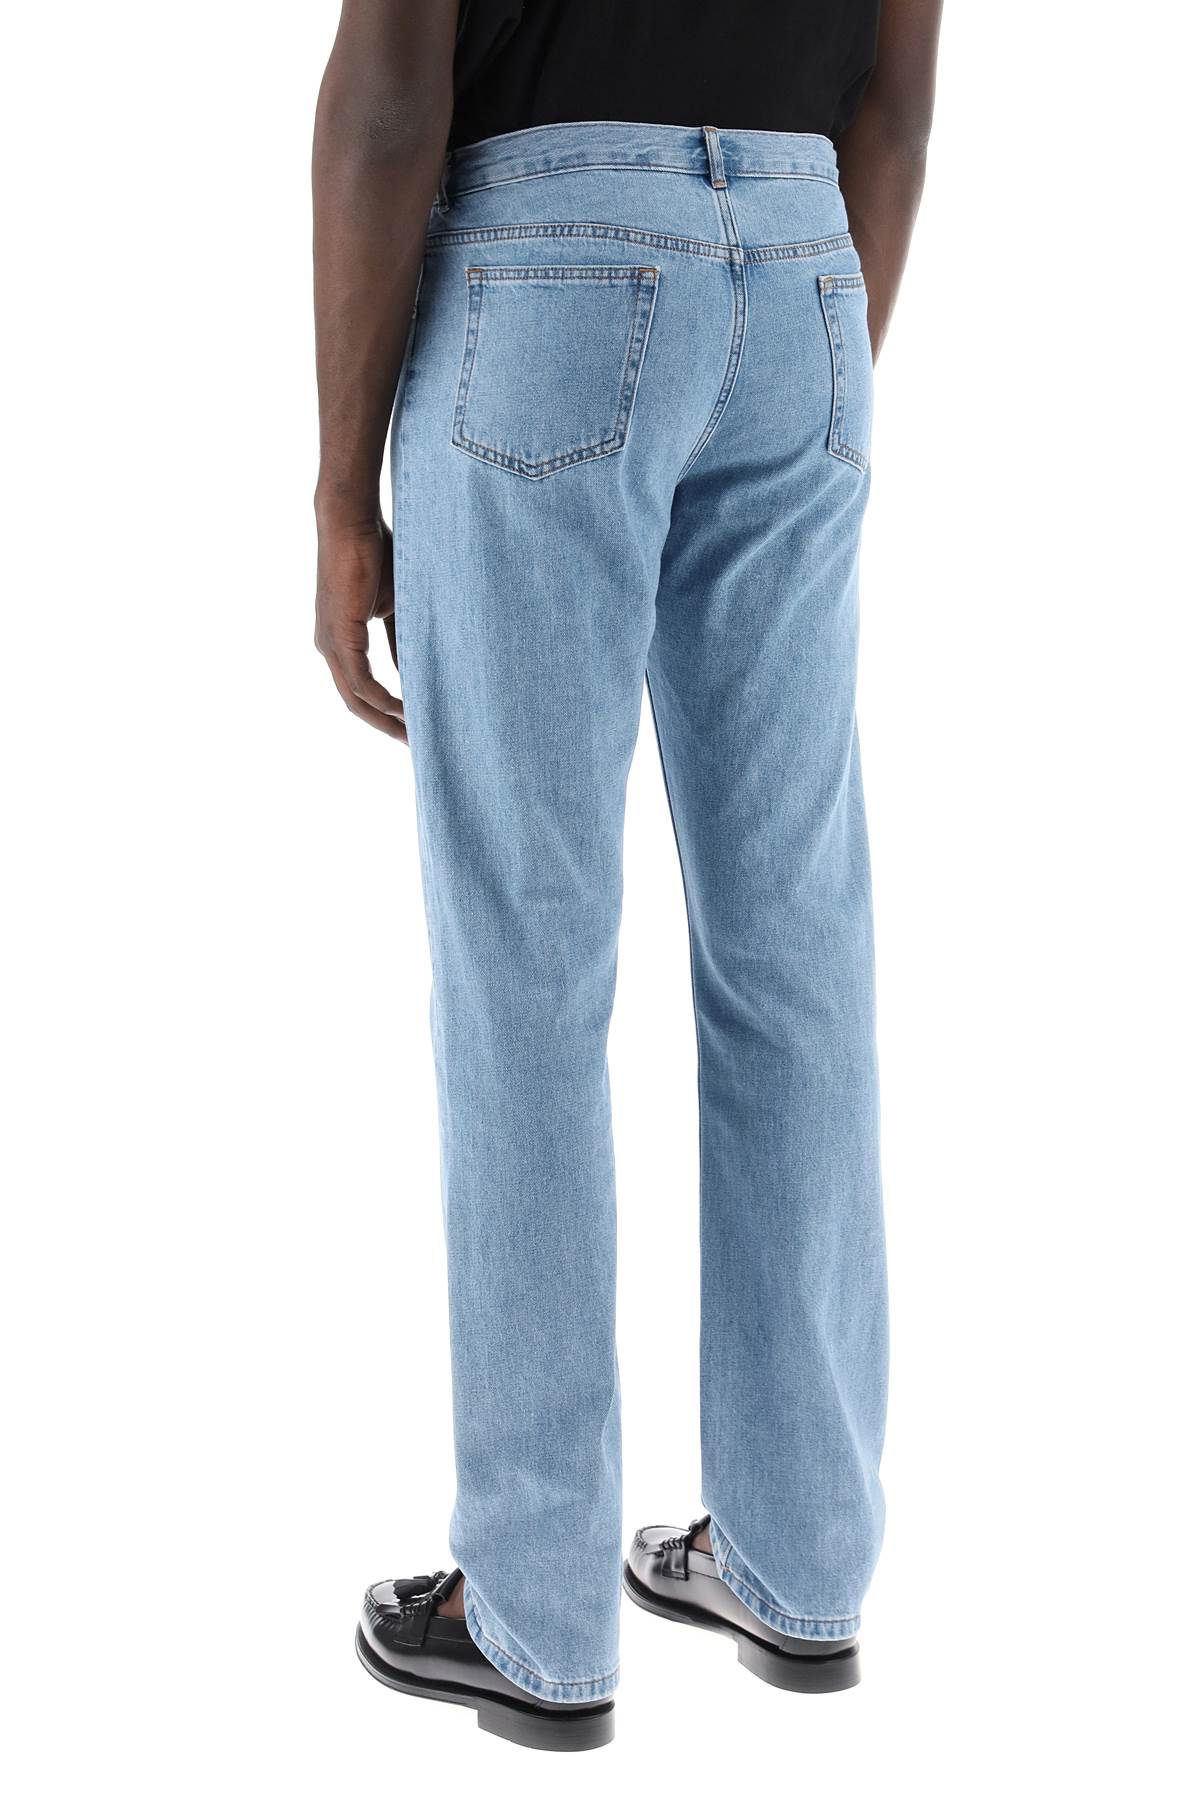 Shop Apc Fit Jeans In Light Blue